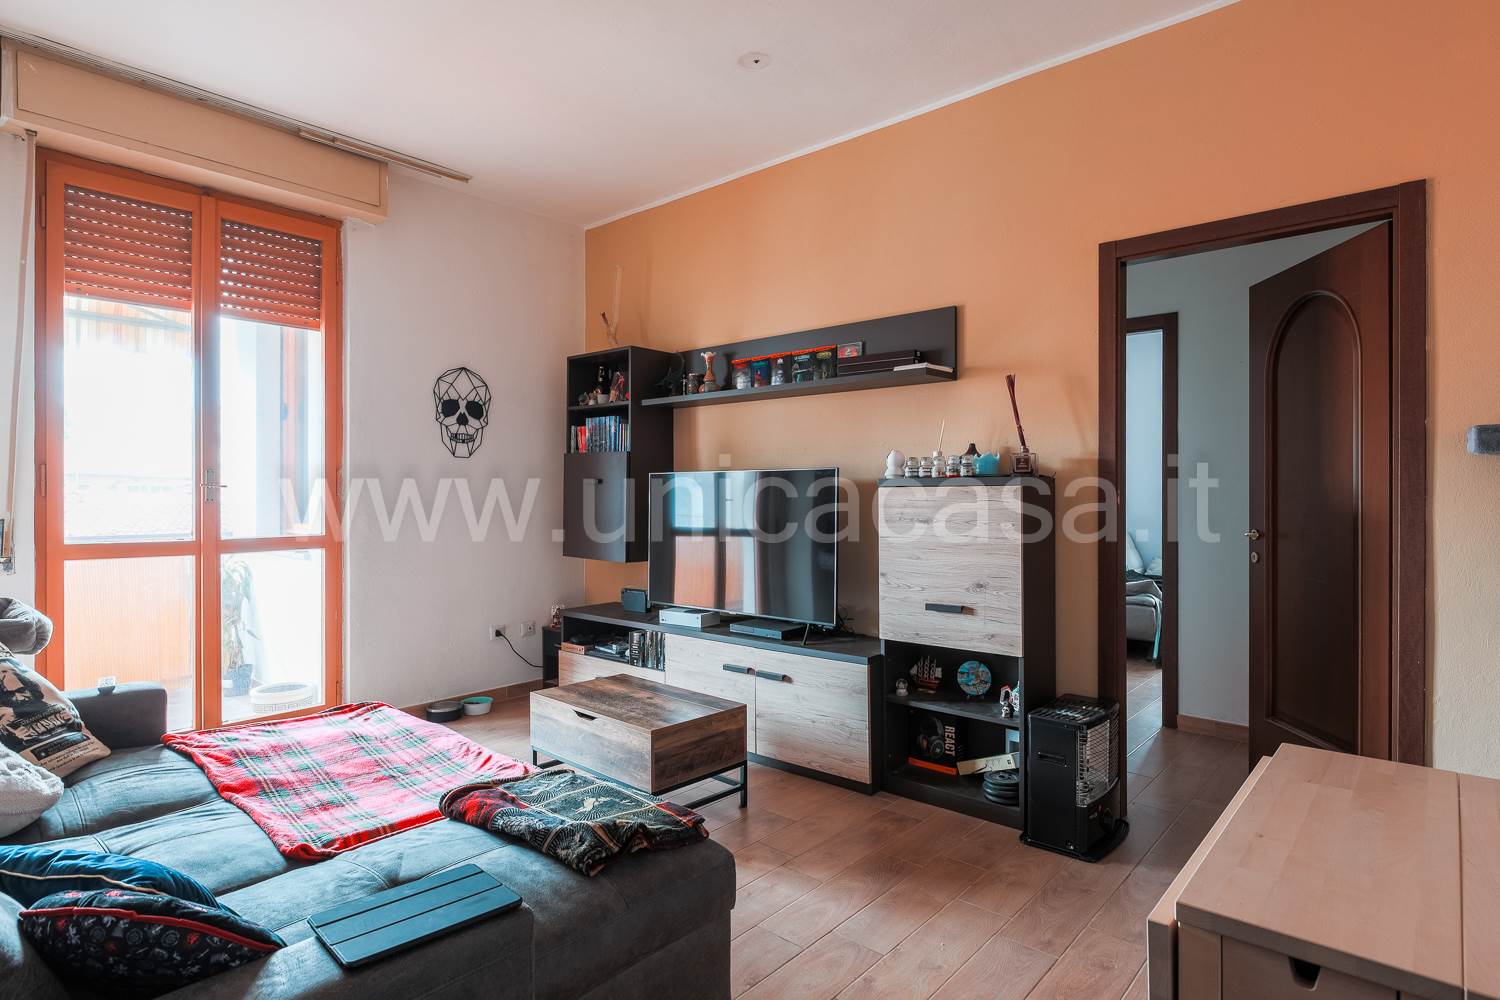 Appartamento in vendita a Trezzo sull'Adda, 3 locali, prezzo € 103.000 | PortaleAgenzieImmobiliari.it